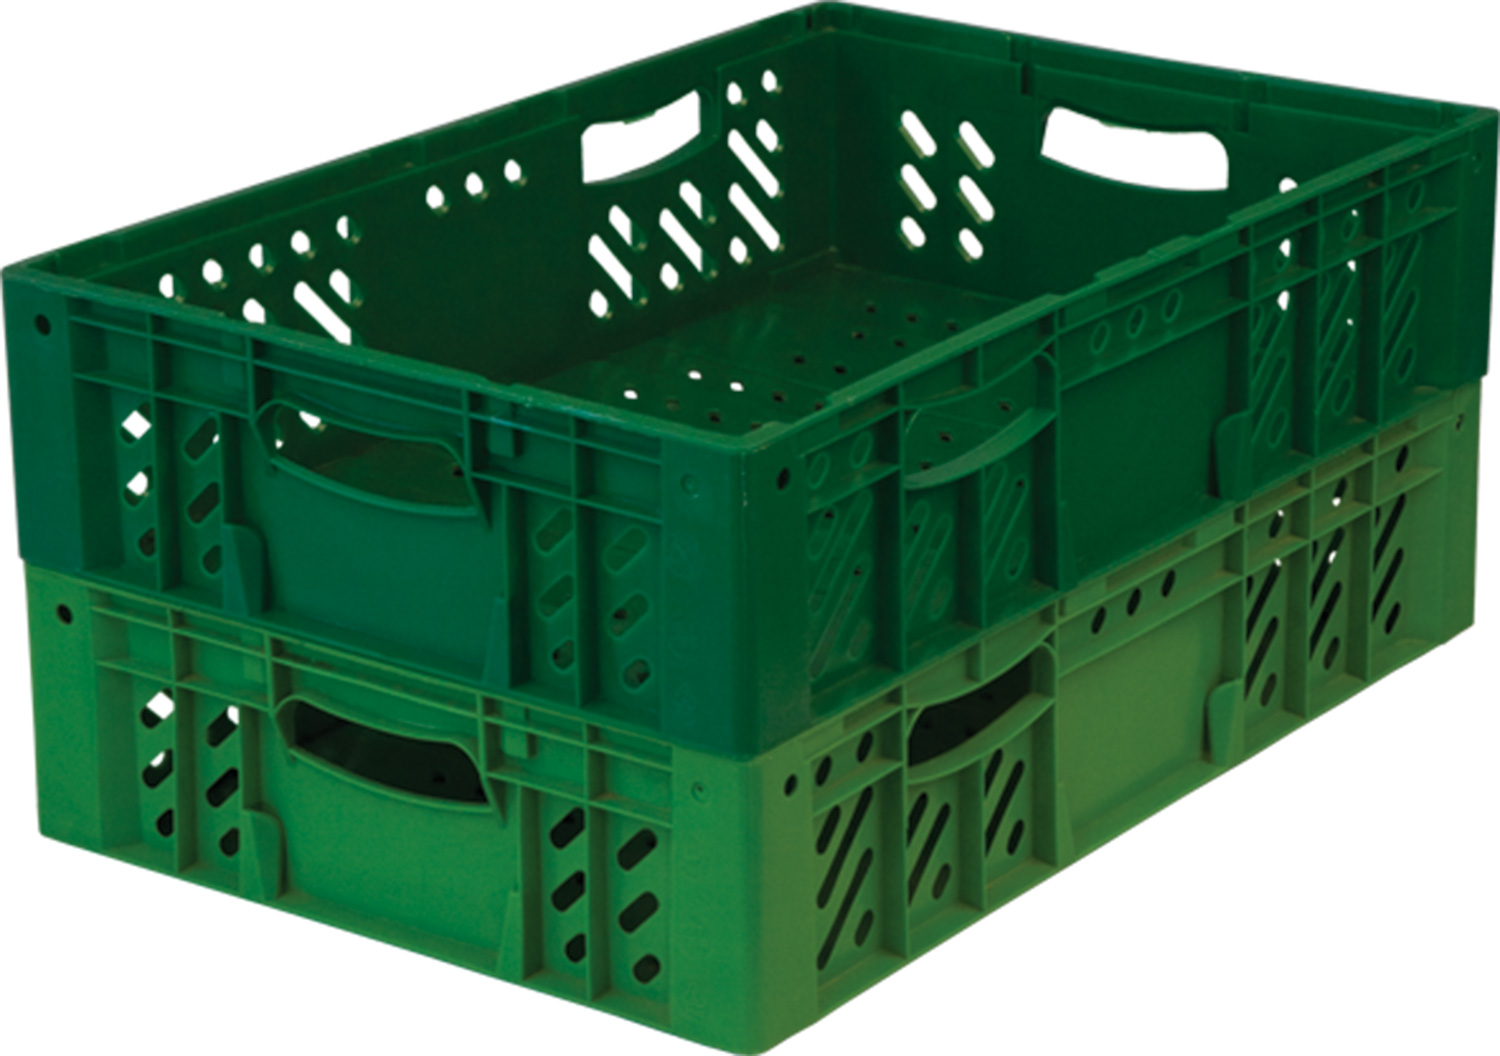 Ящик пищевой 118 размером 600х400х140 мм с перфорацией зелёный прямоугольный